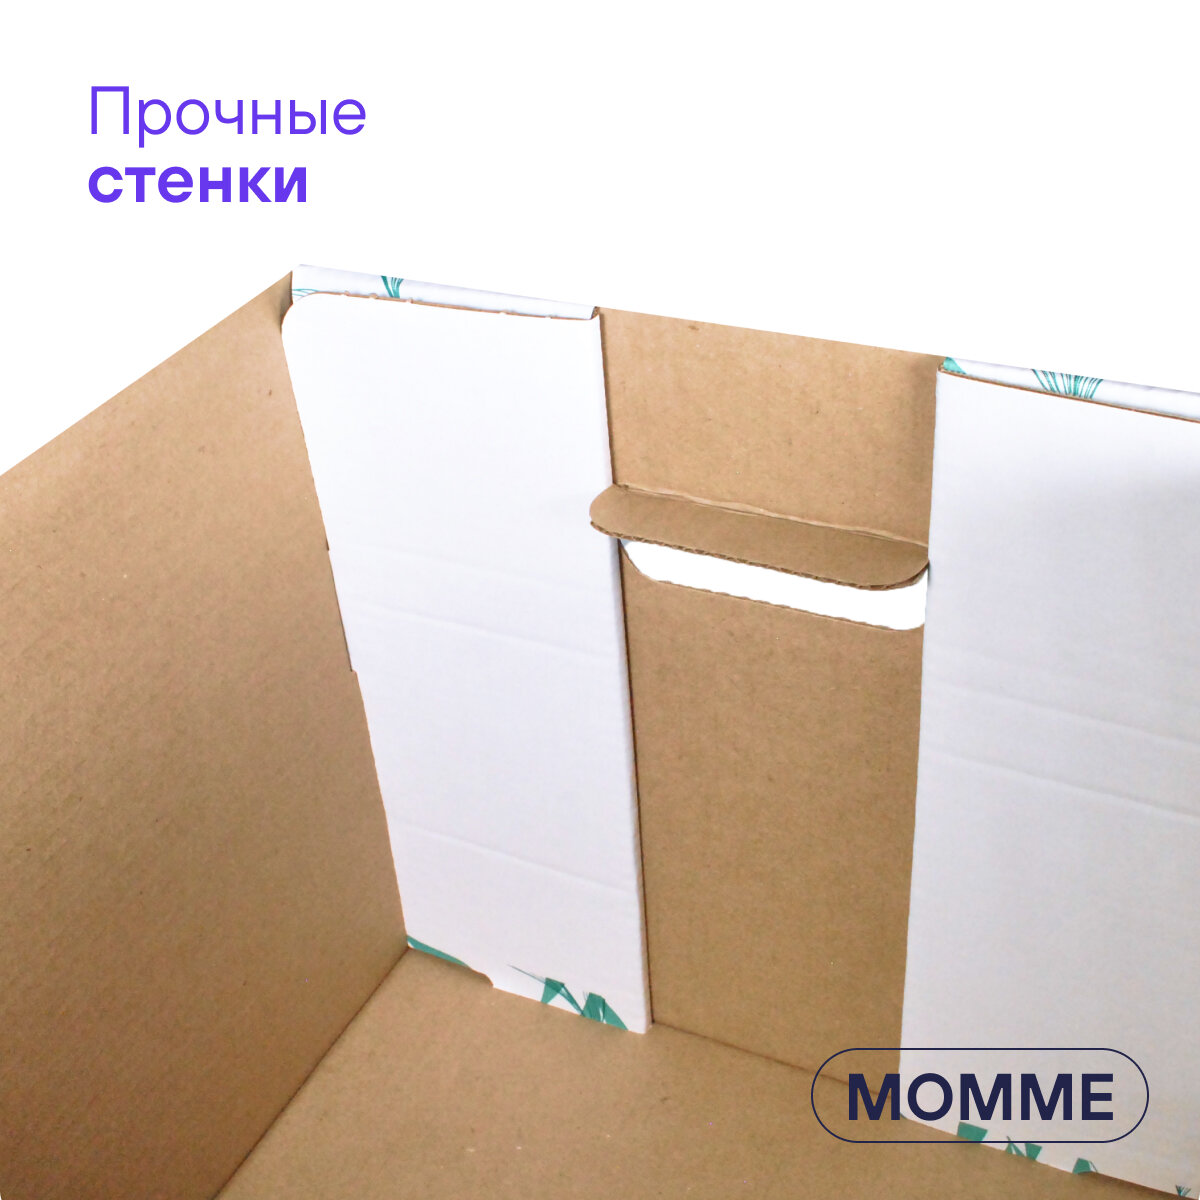 Коробка для хранения вещей и игрушек BOXY момме 38х33х30 см, цвет серый, гофрокартон, в упаковке 4 шт - фотография № 7